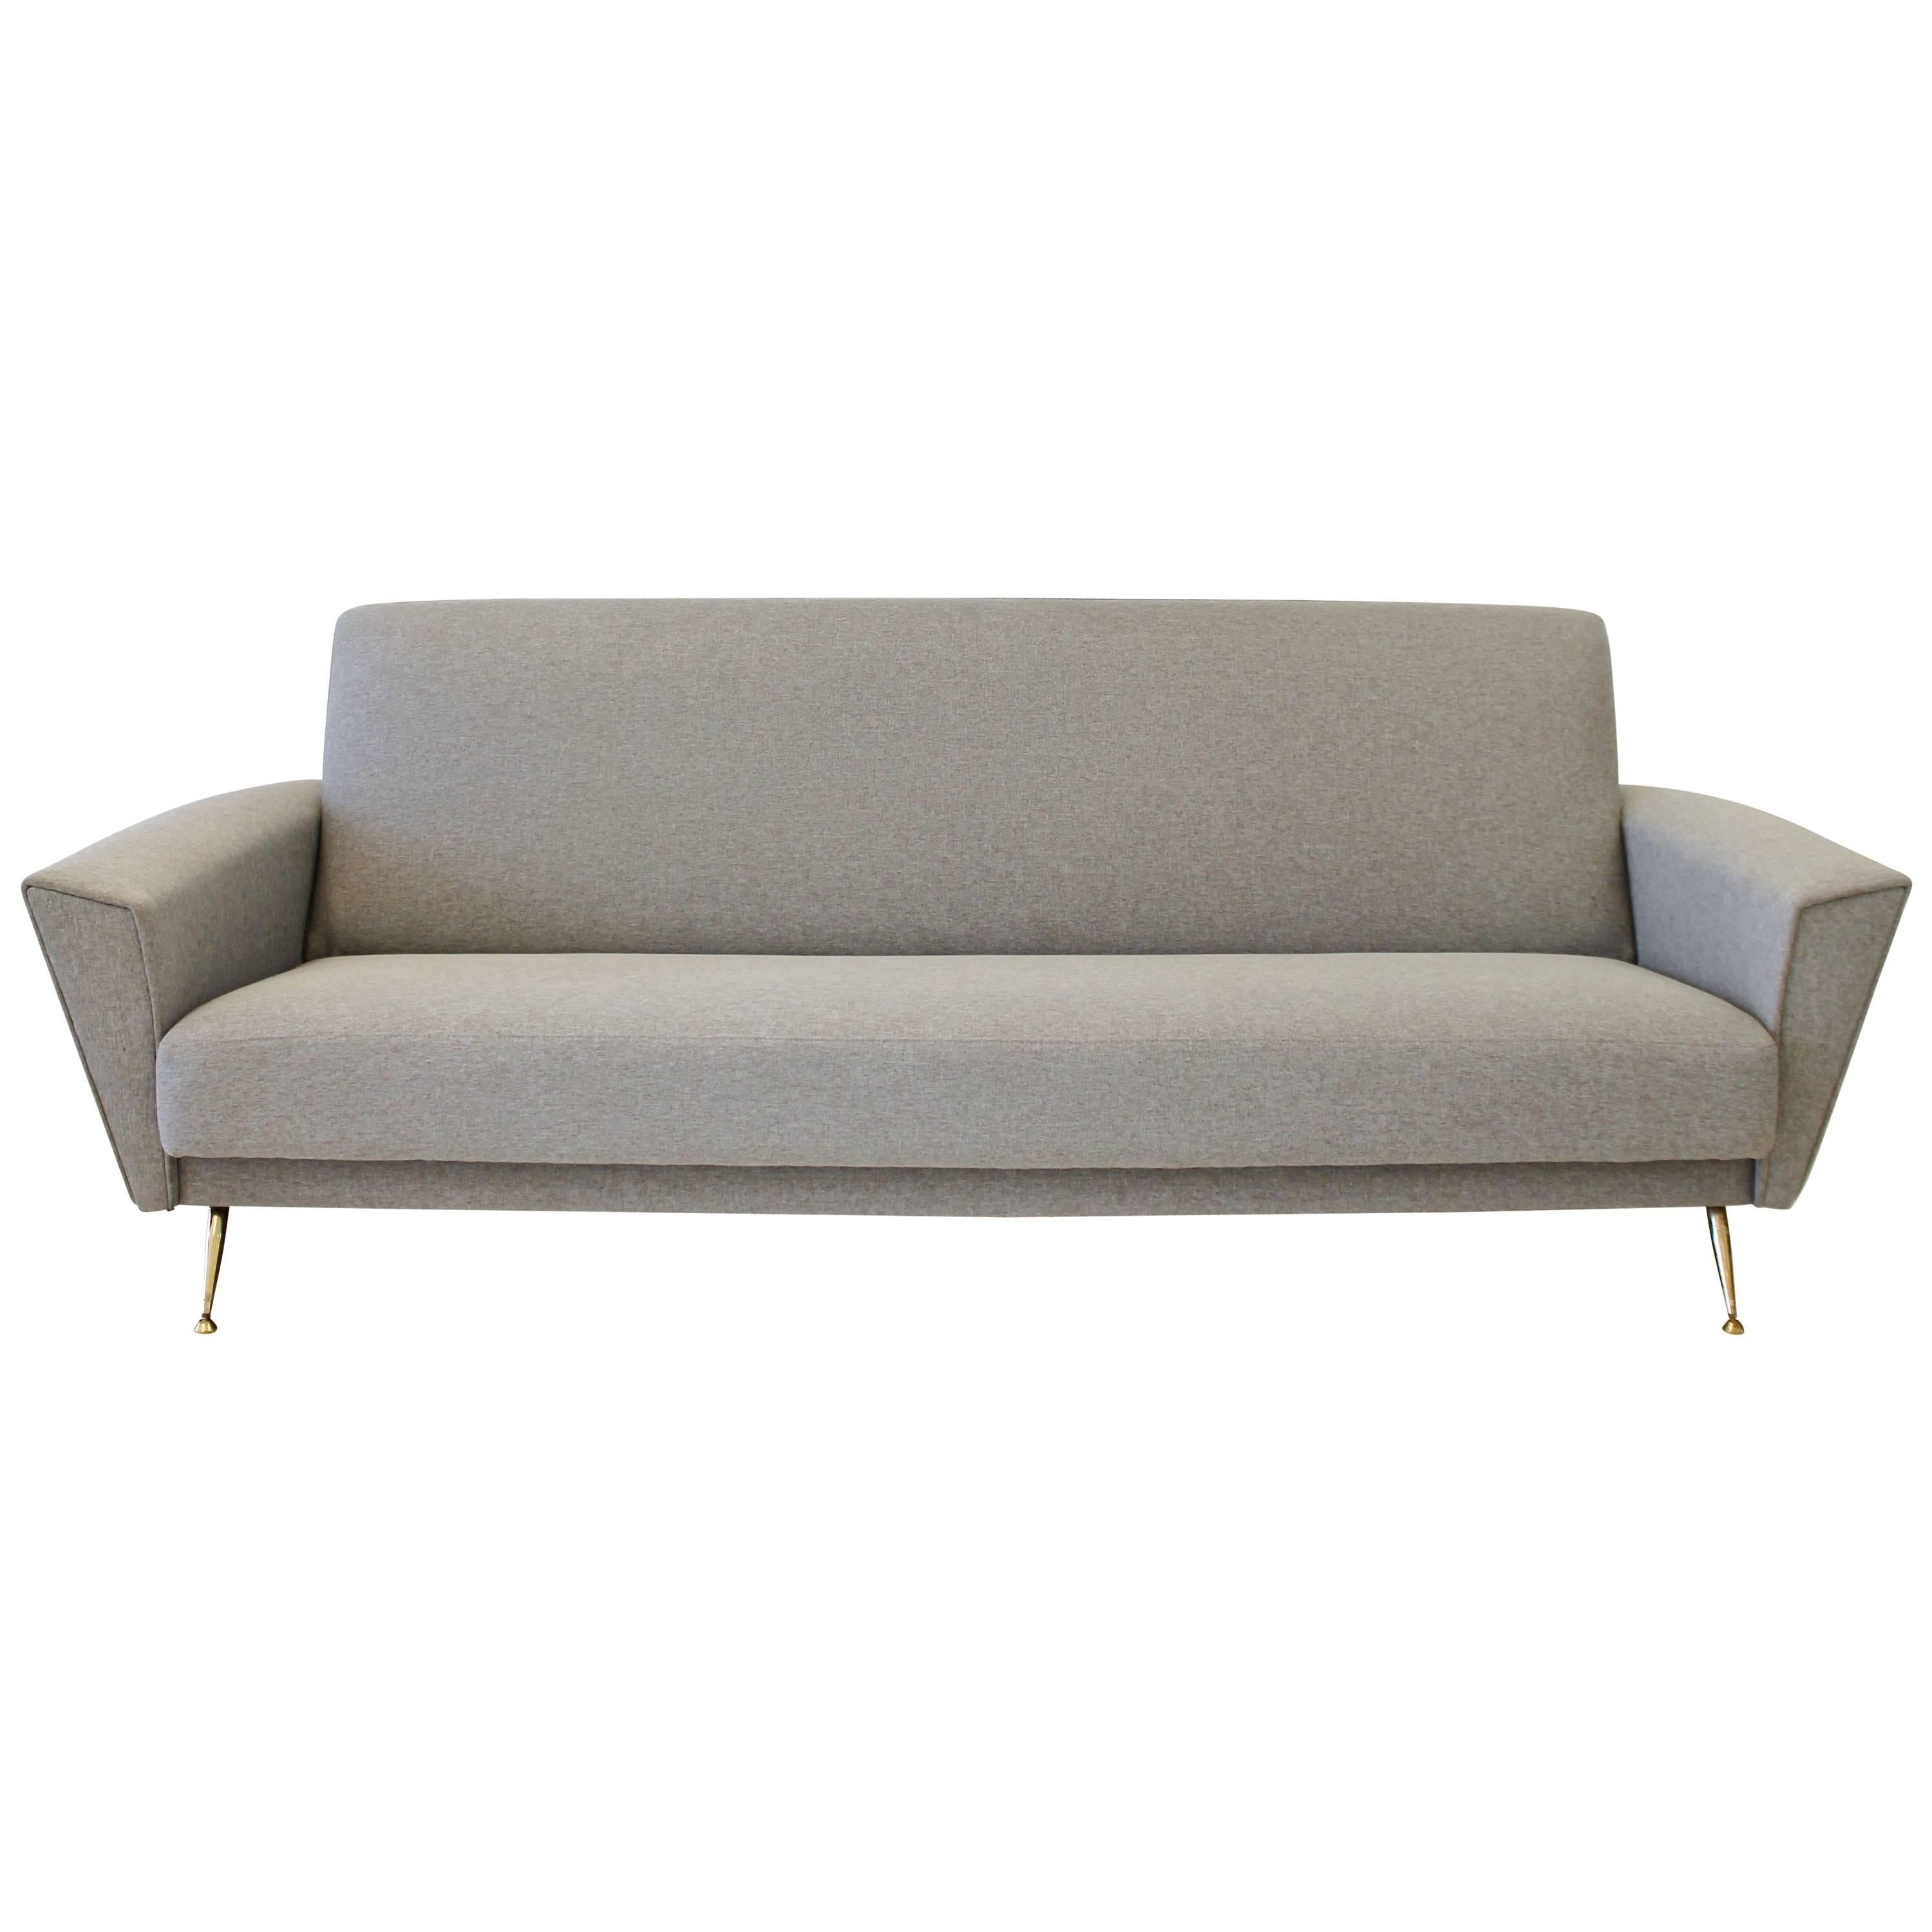 Elegant 1950s Re-Upholstered Italian Sofa